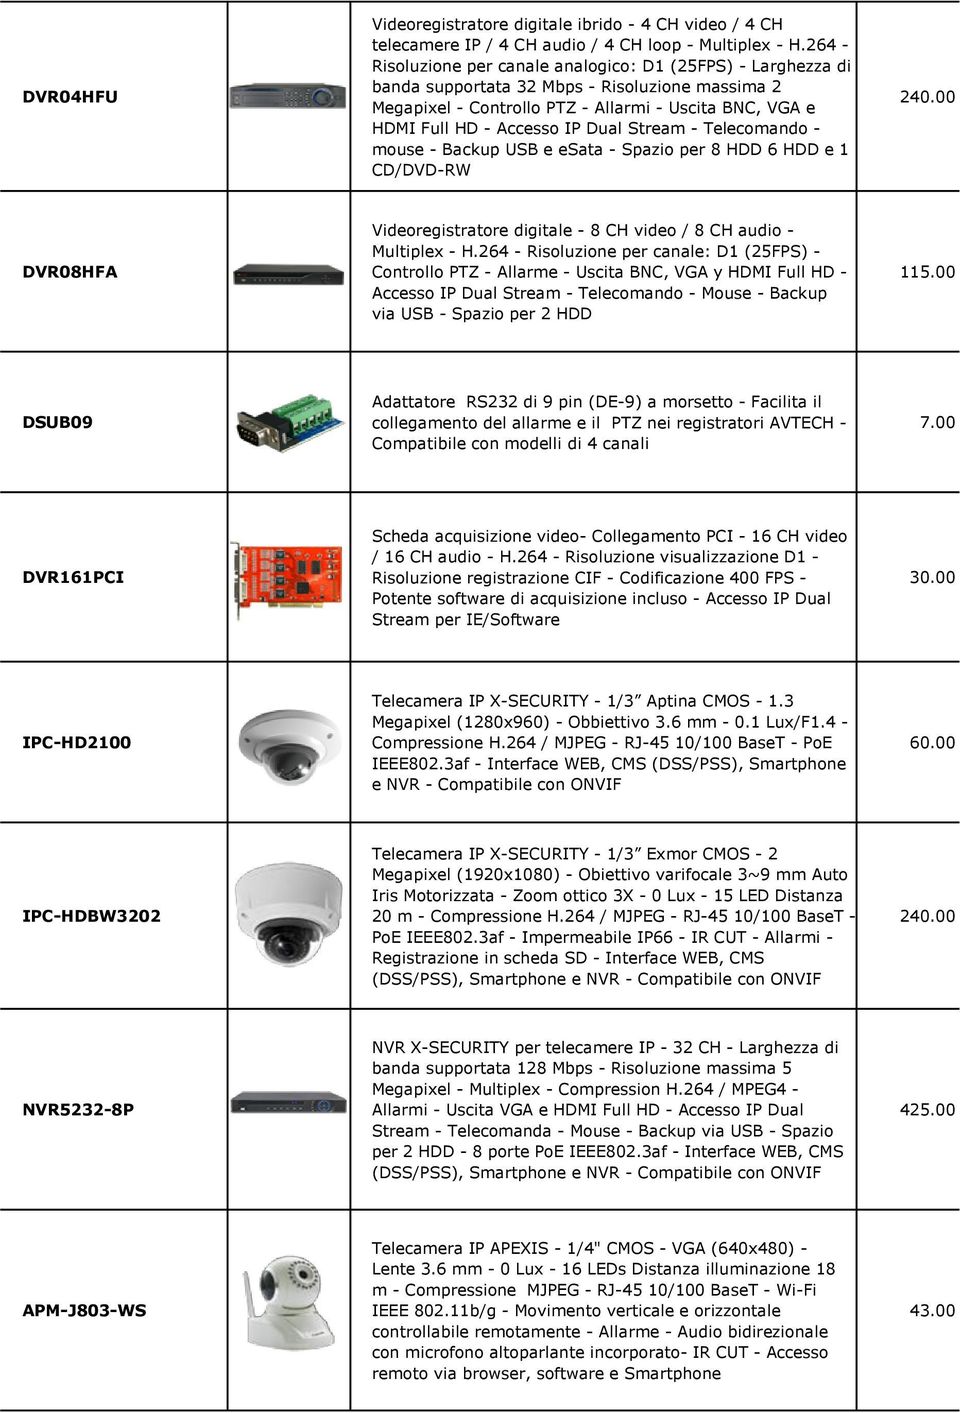 Dual Stream - Telecomando - mouse - Backup USB e esata - Spazio per 8 HDD 6 HDD e 1 CD/DVD-RW 240.00 DVR08HFA Videoregistratore digitale - 8 CH video / 8 CH audio - Multiplex - H.